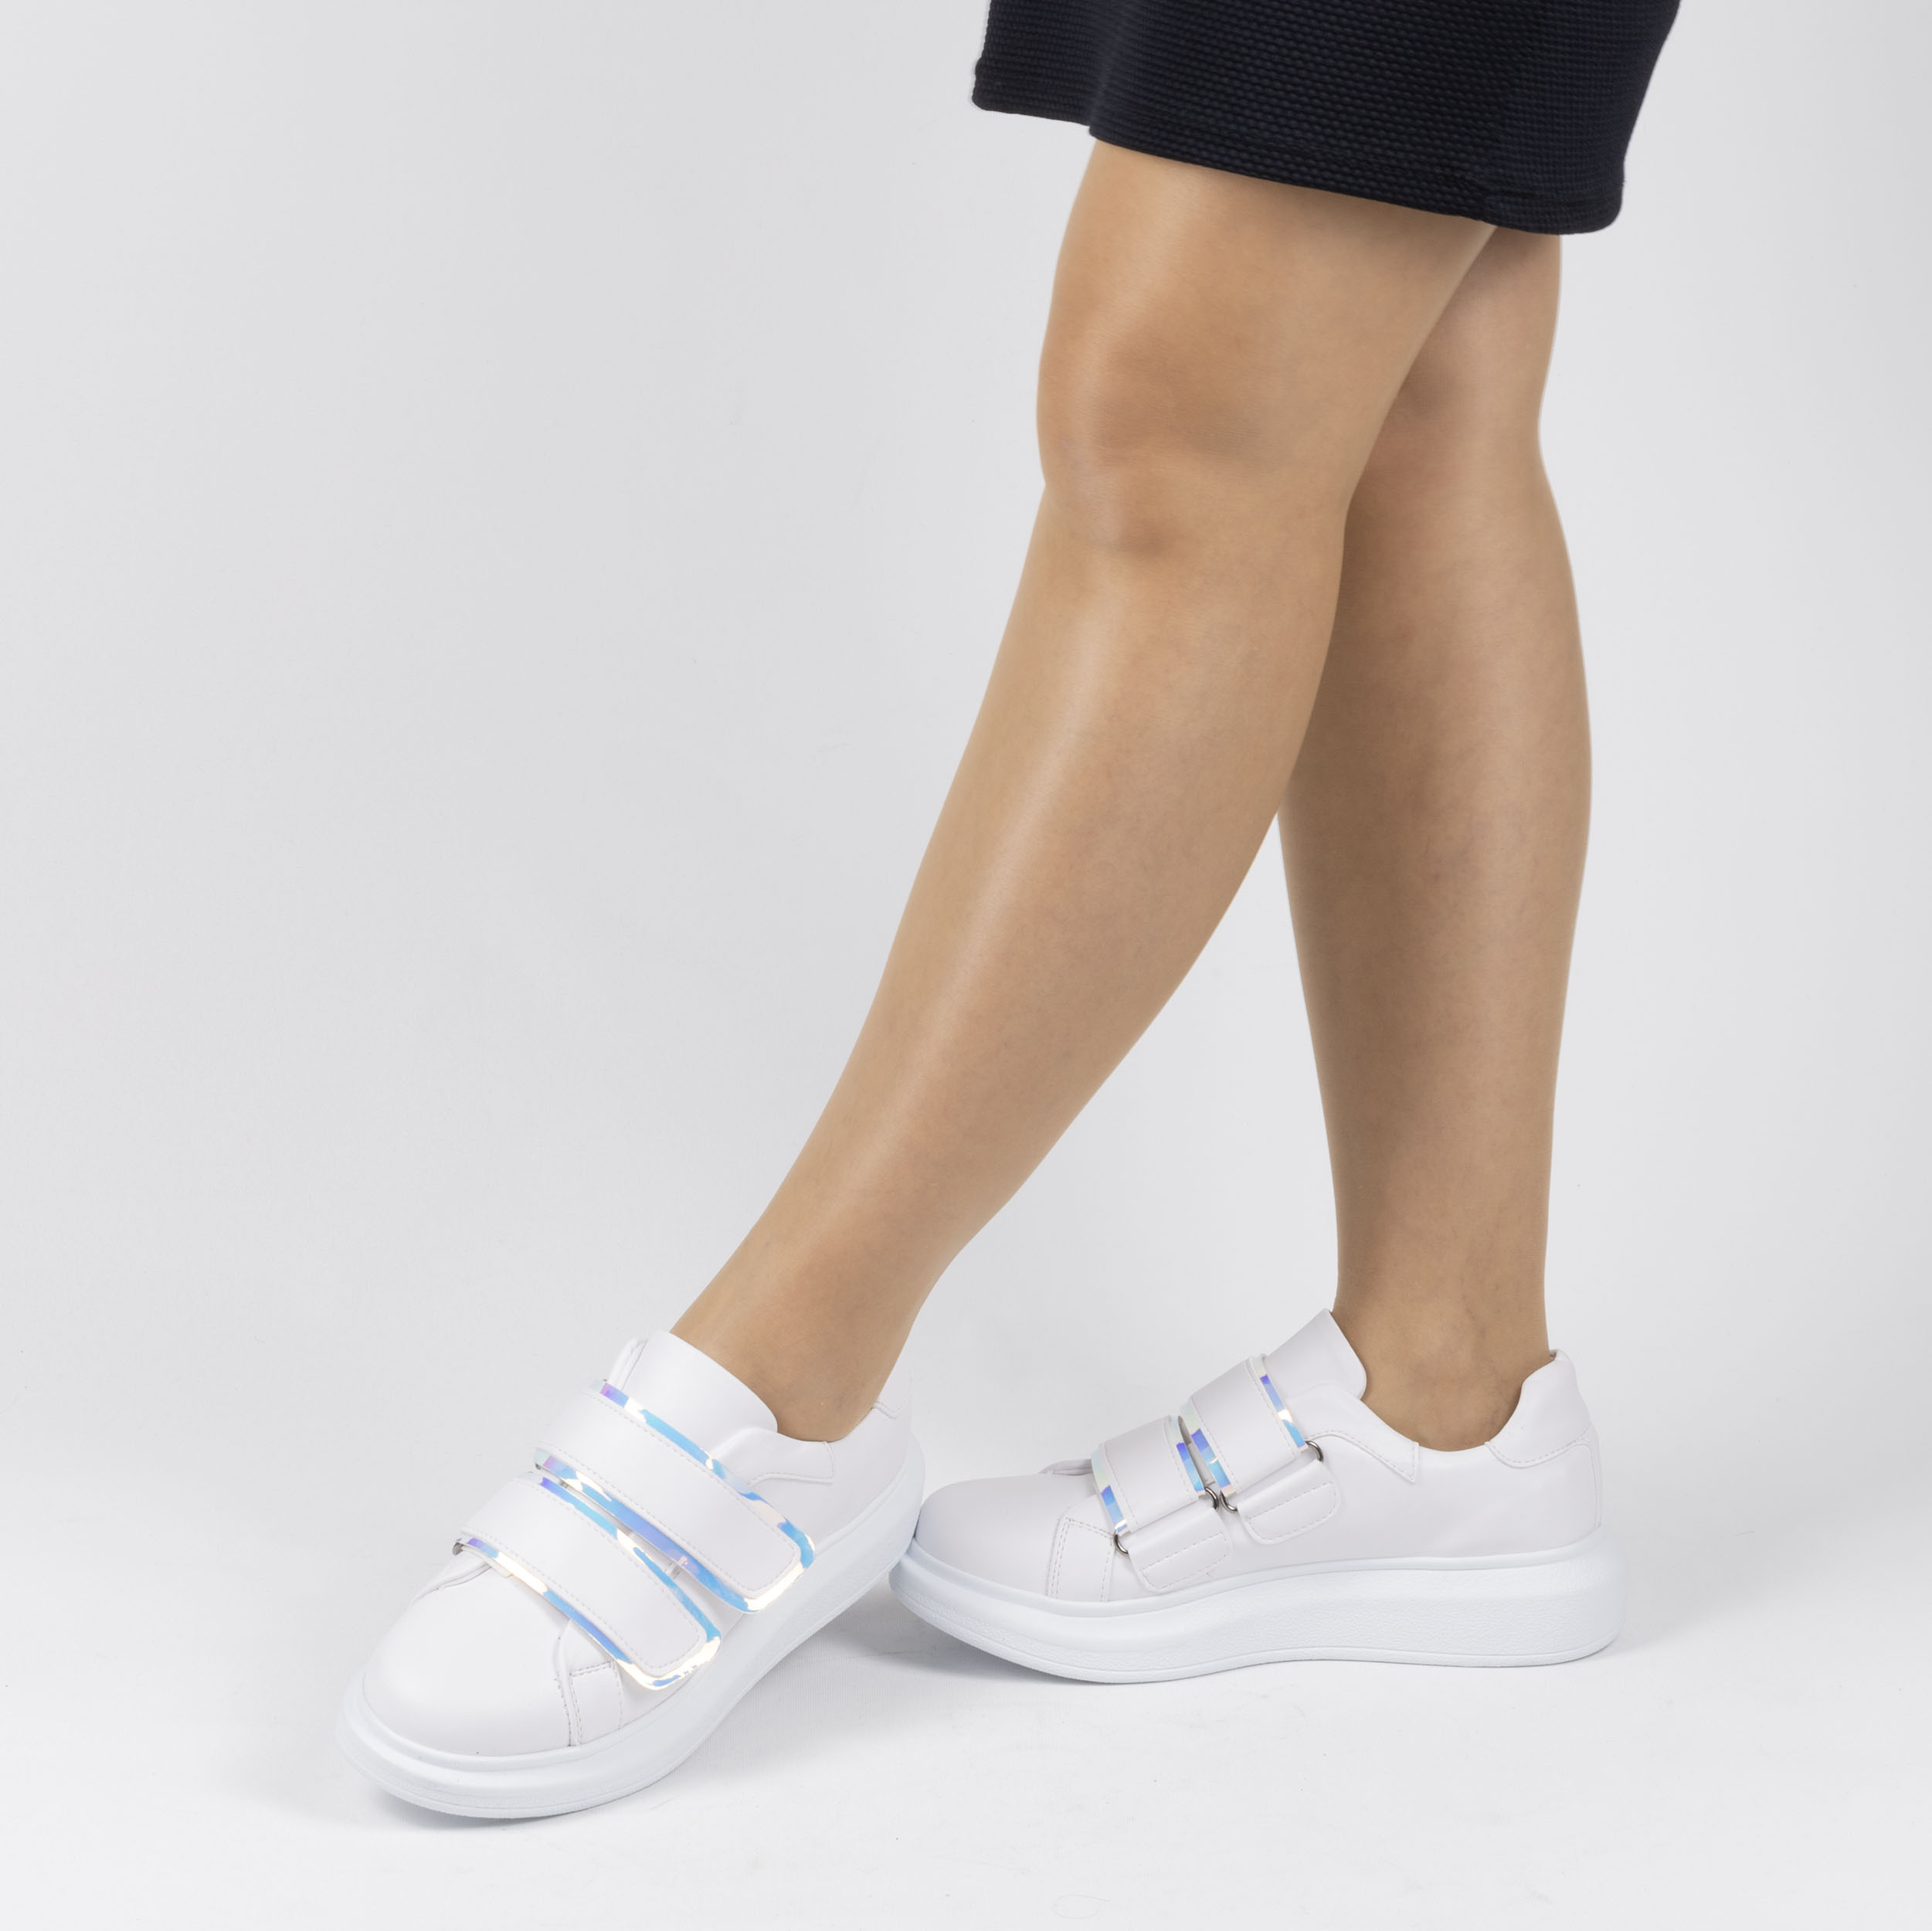 Kadın Cırtlı Günlük Beyaz Hafif Spor Kalın Tabanlı  Ayakkabı, Renk: Beyaz, Beden: 37